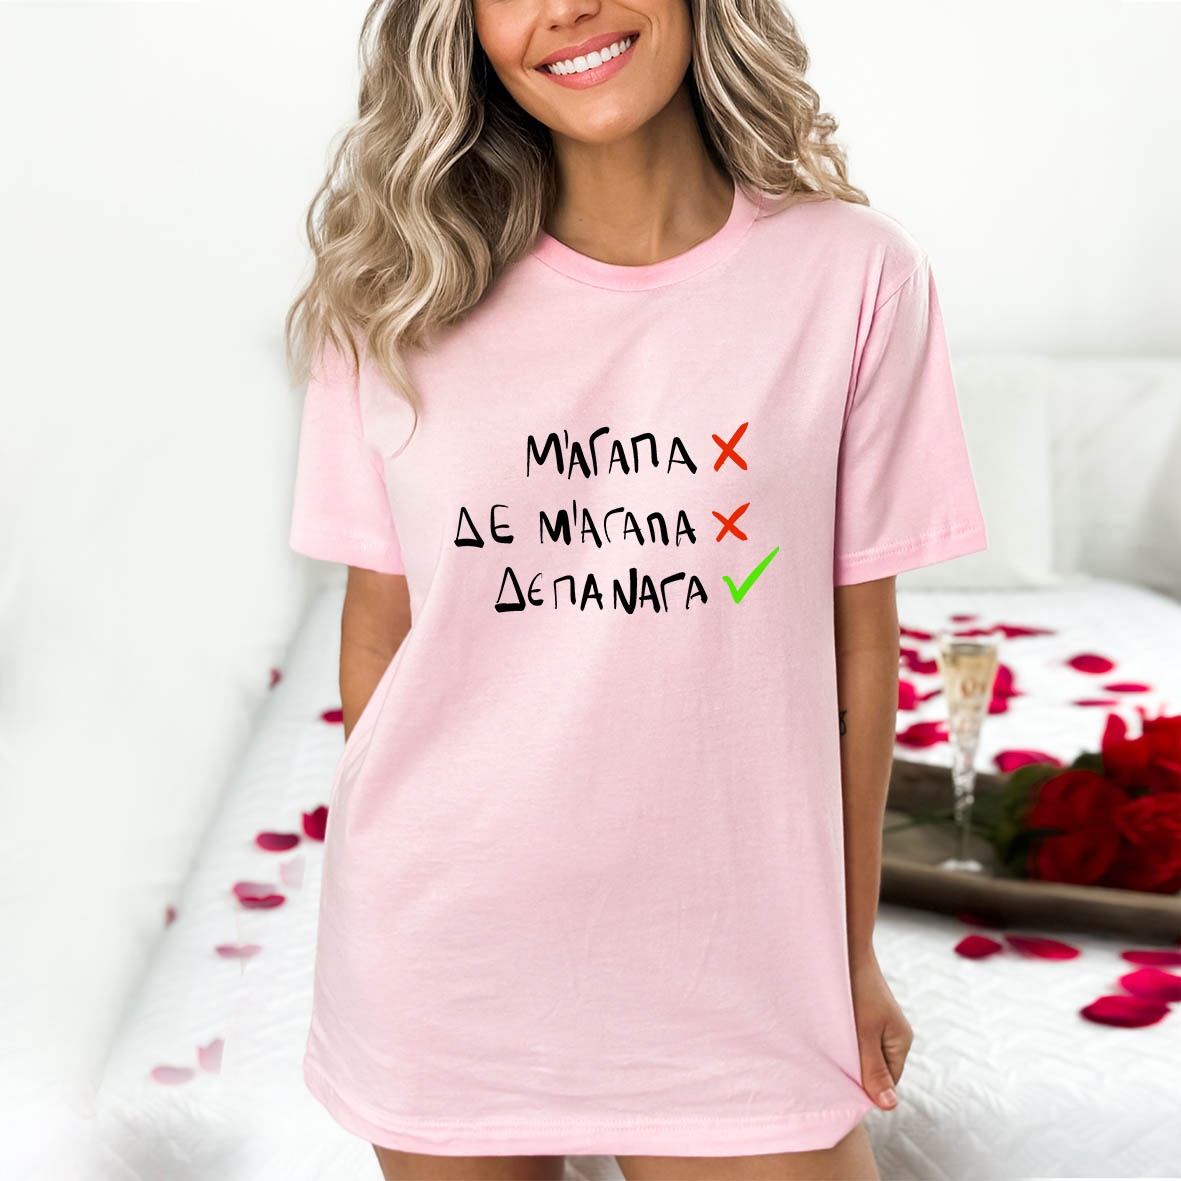 ΔΕΠΑΝΑΓΑ - Organic Vegan T-Shirt Unisex